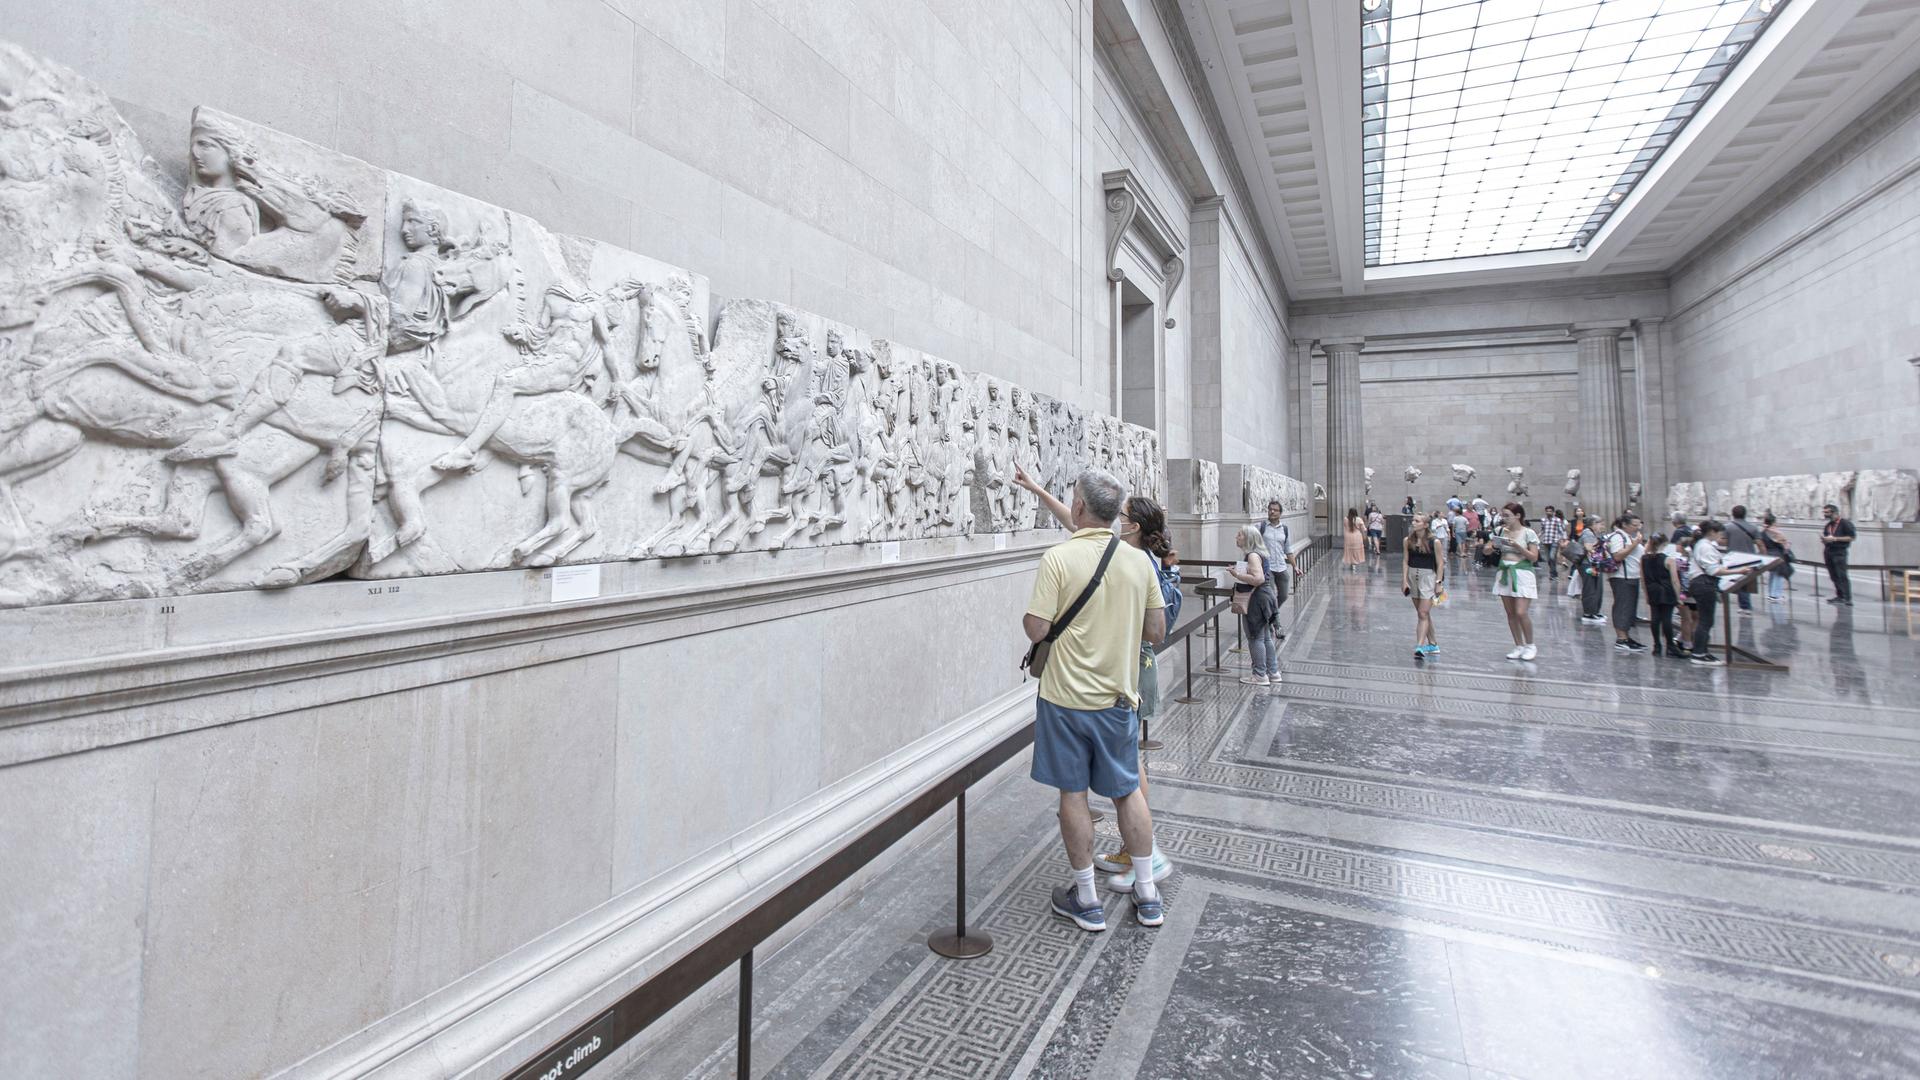 Besucher im British Museum in London betrachten Teile des Parthenon-Frieses, die an der Wand angebracht sind.